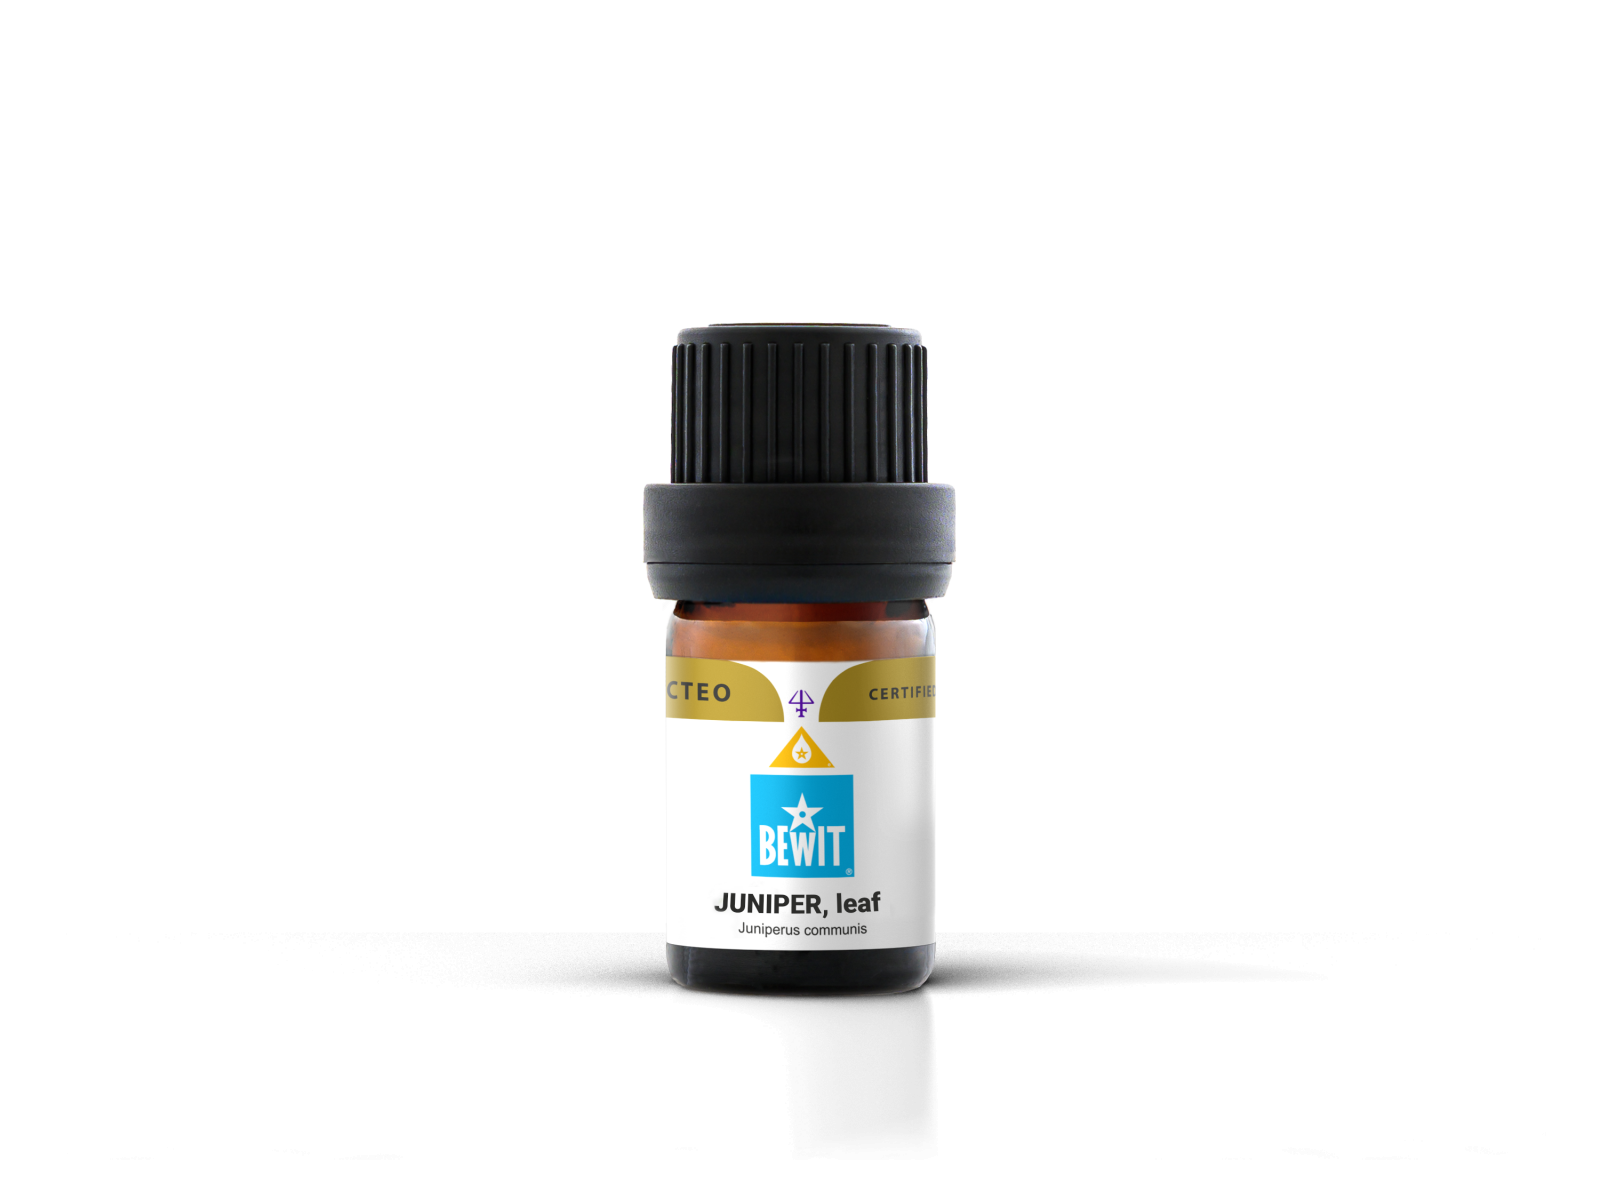 BEWIT Juniper, leaf - 100% pure essential oil - 4